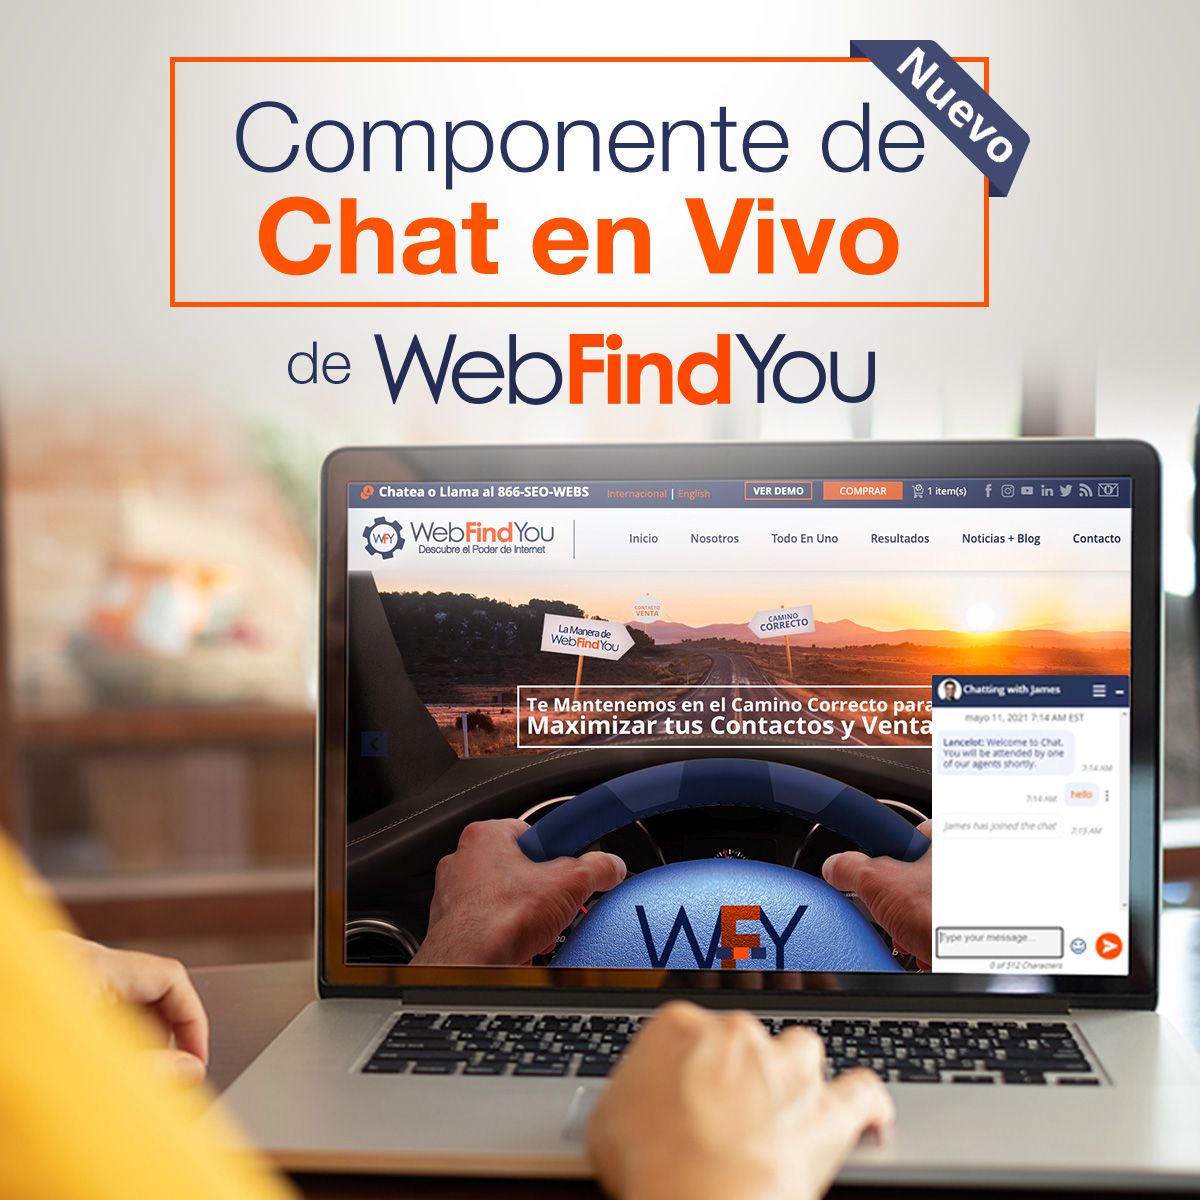 Nuevo Componente de Chat en Vivo de WebFindYou